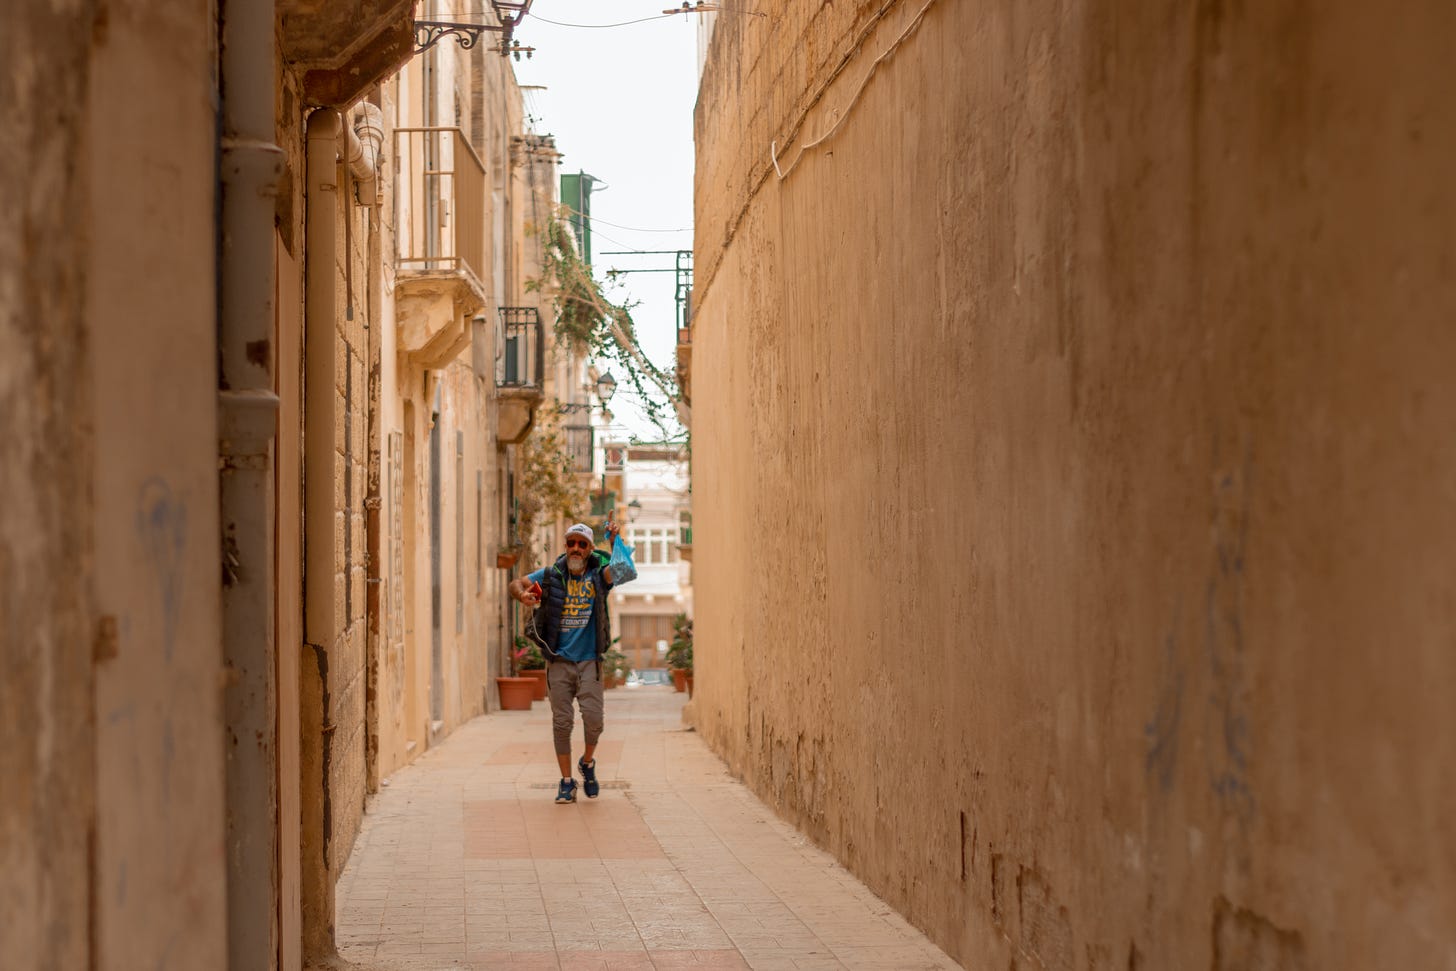 An old man walking in a narrow street in Malta: A photo by David Elikwu